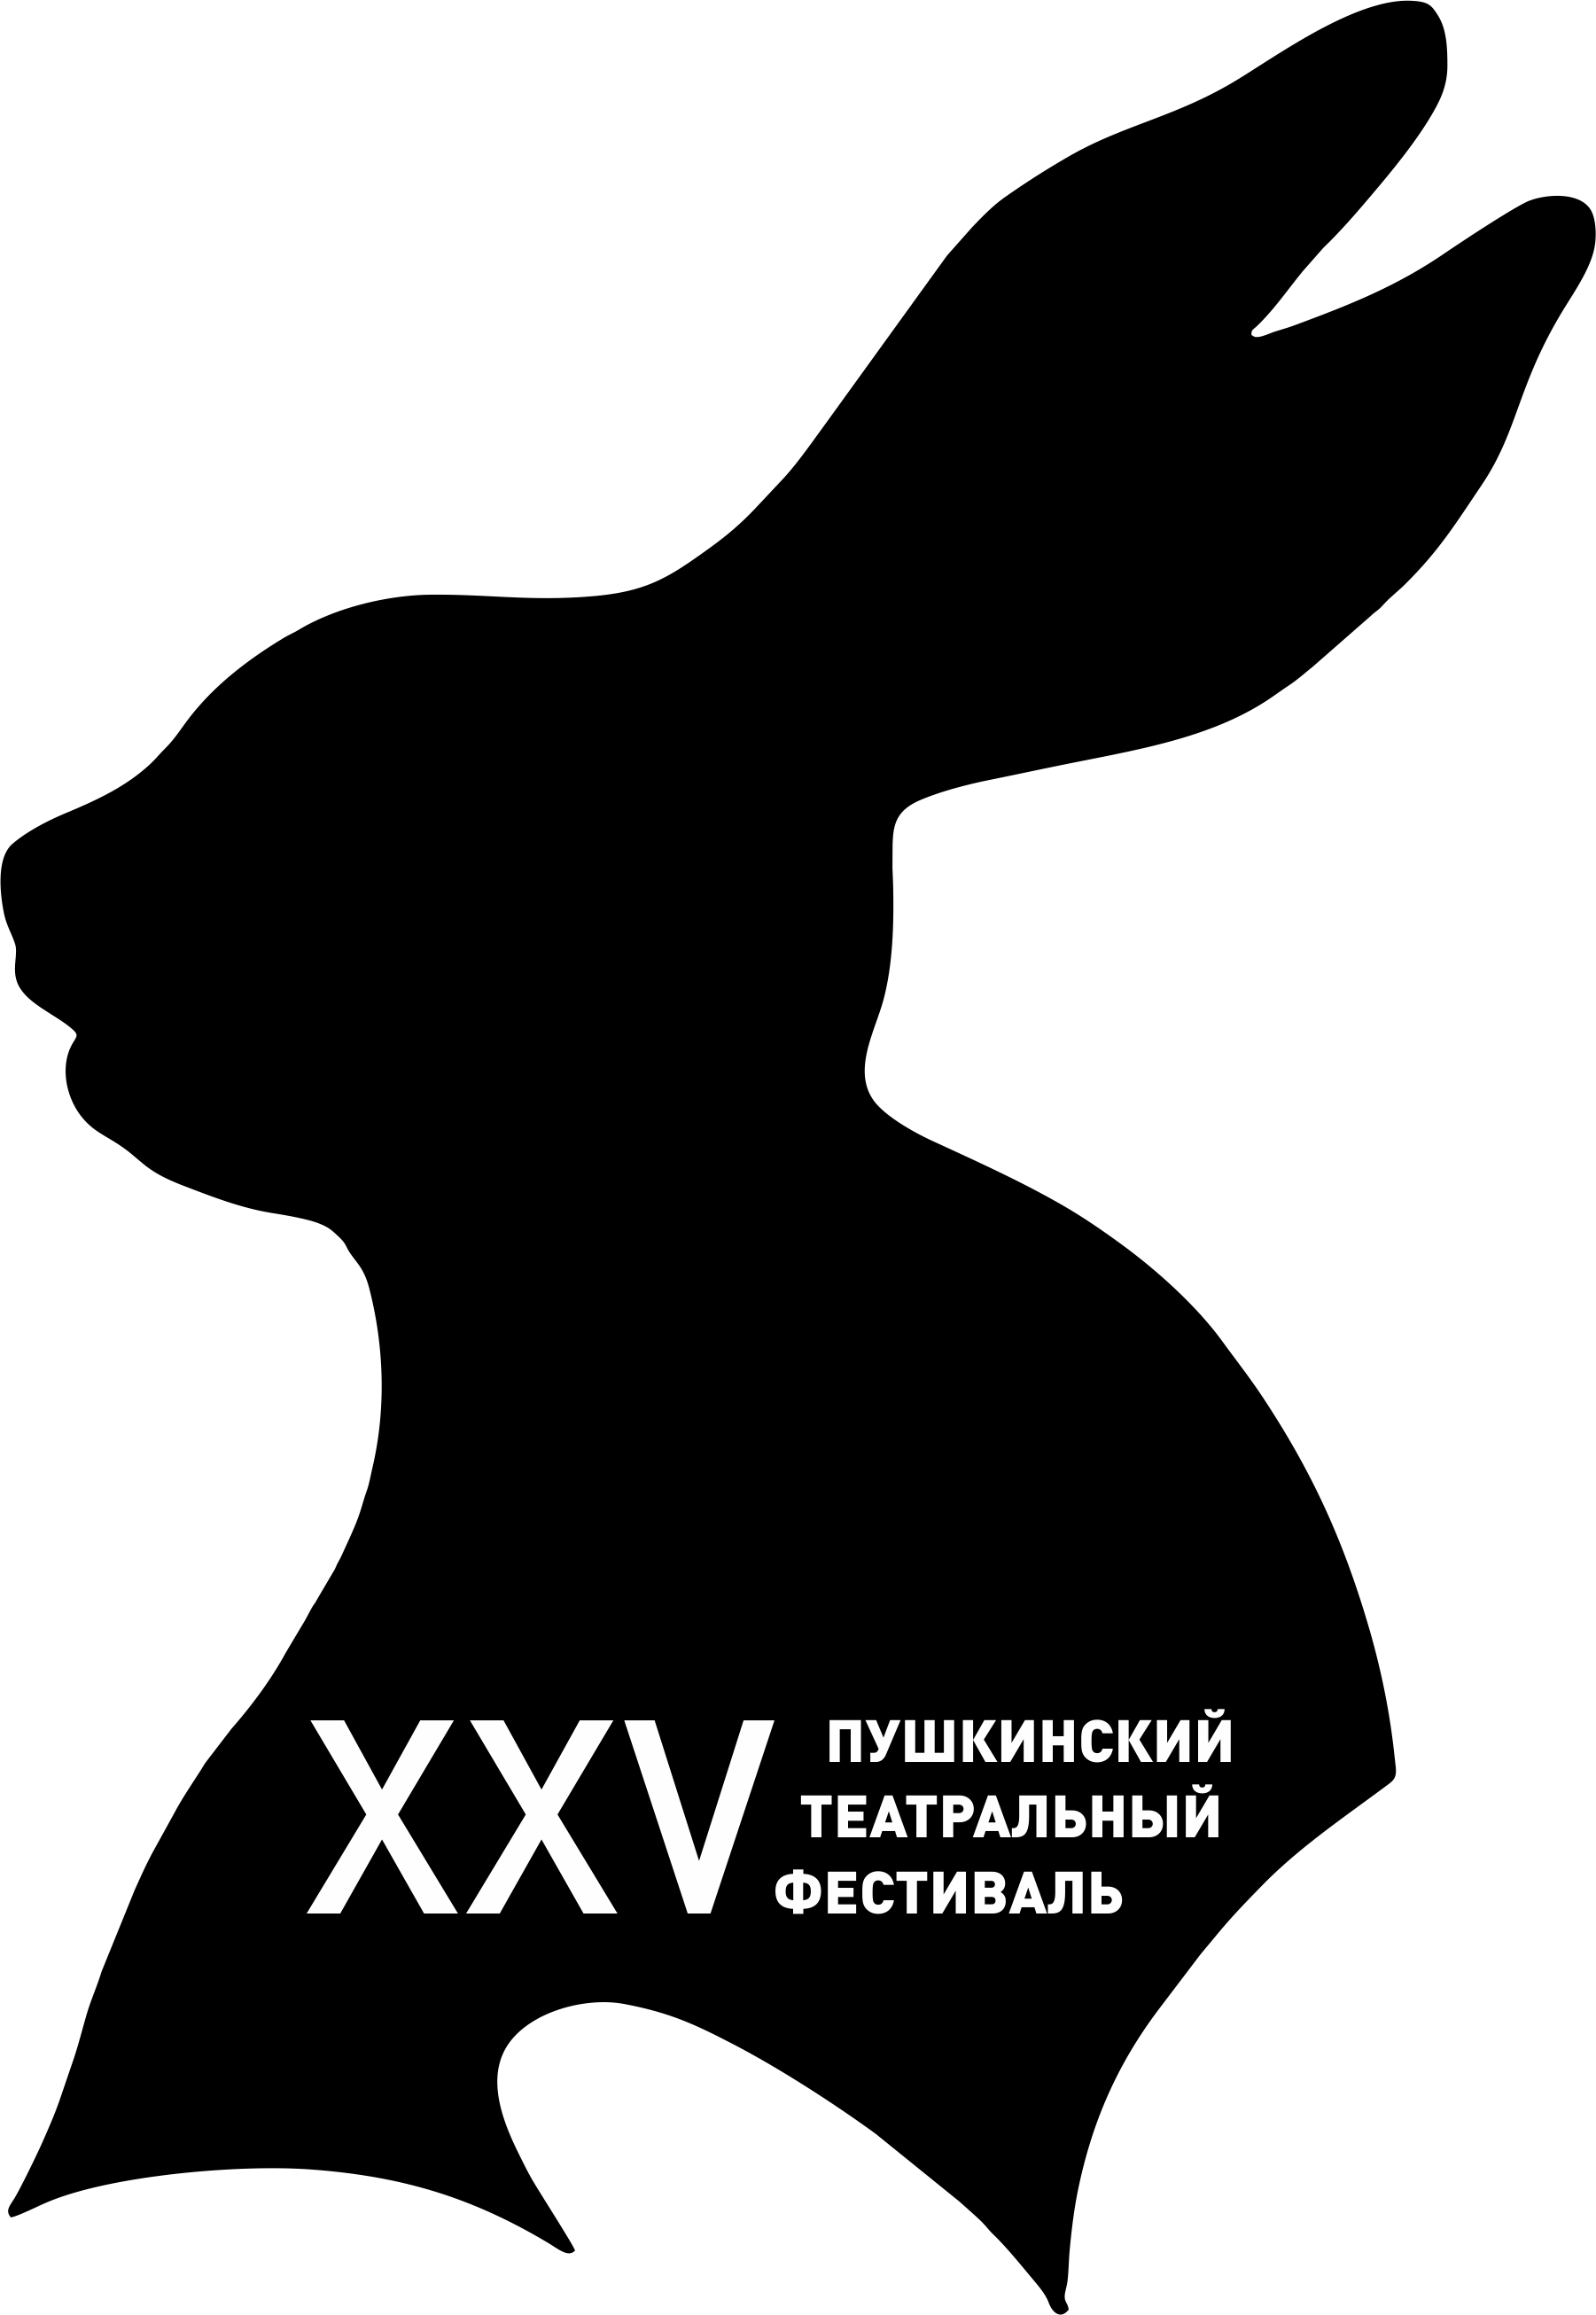 Пушкинский театральный фестиваль. Логотип. 